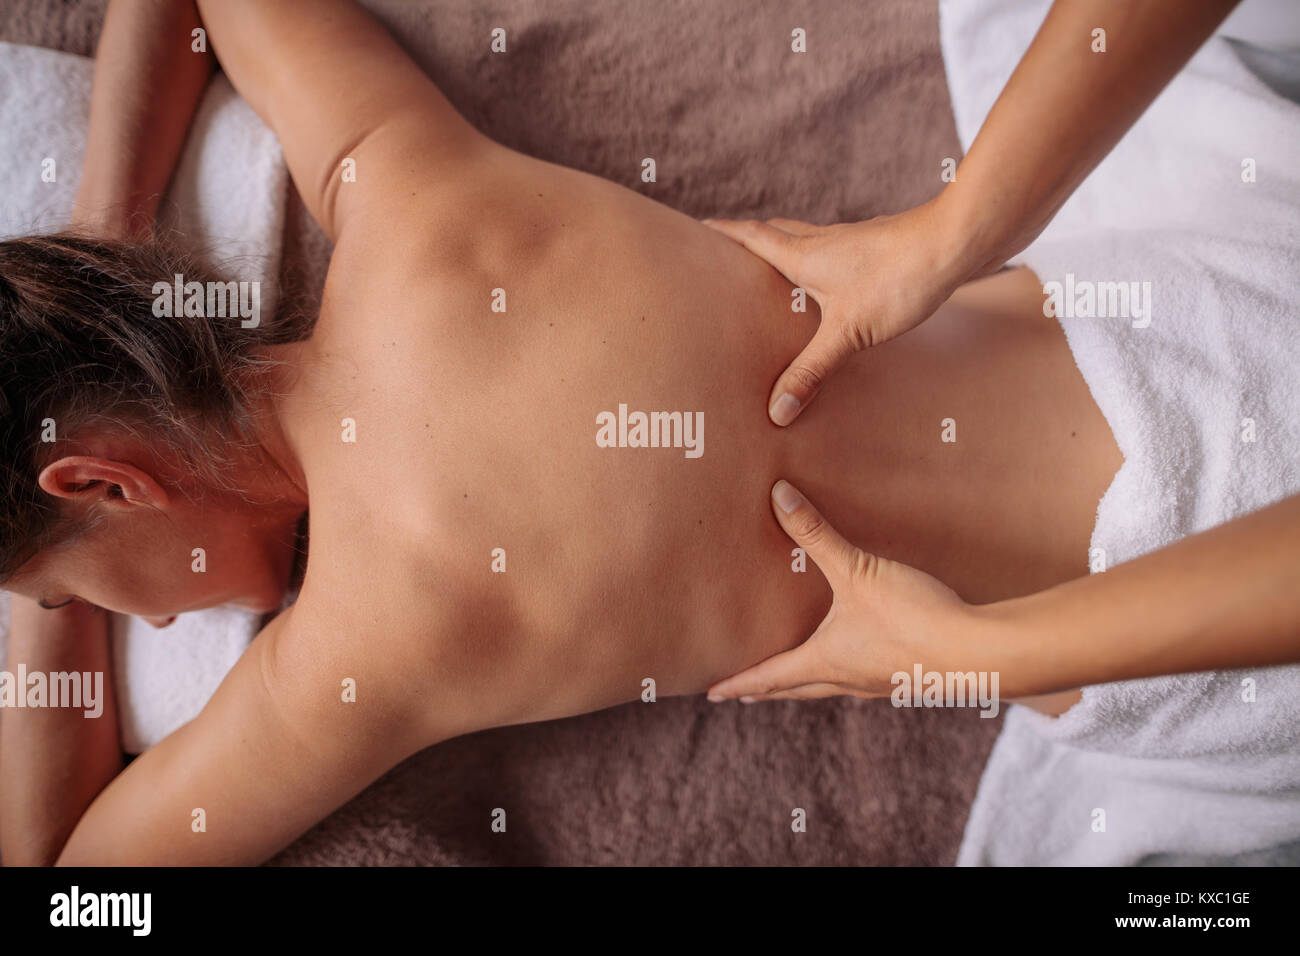 Vue de dessus de woman receiving back massage au spa. Avoir une femme sur son dos massage relaxant au spa de beauté. Banque D'Images